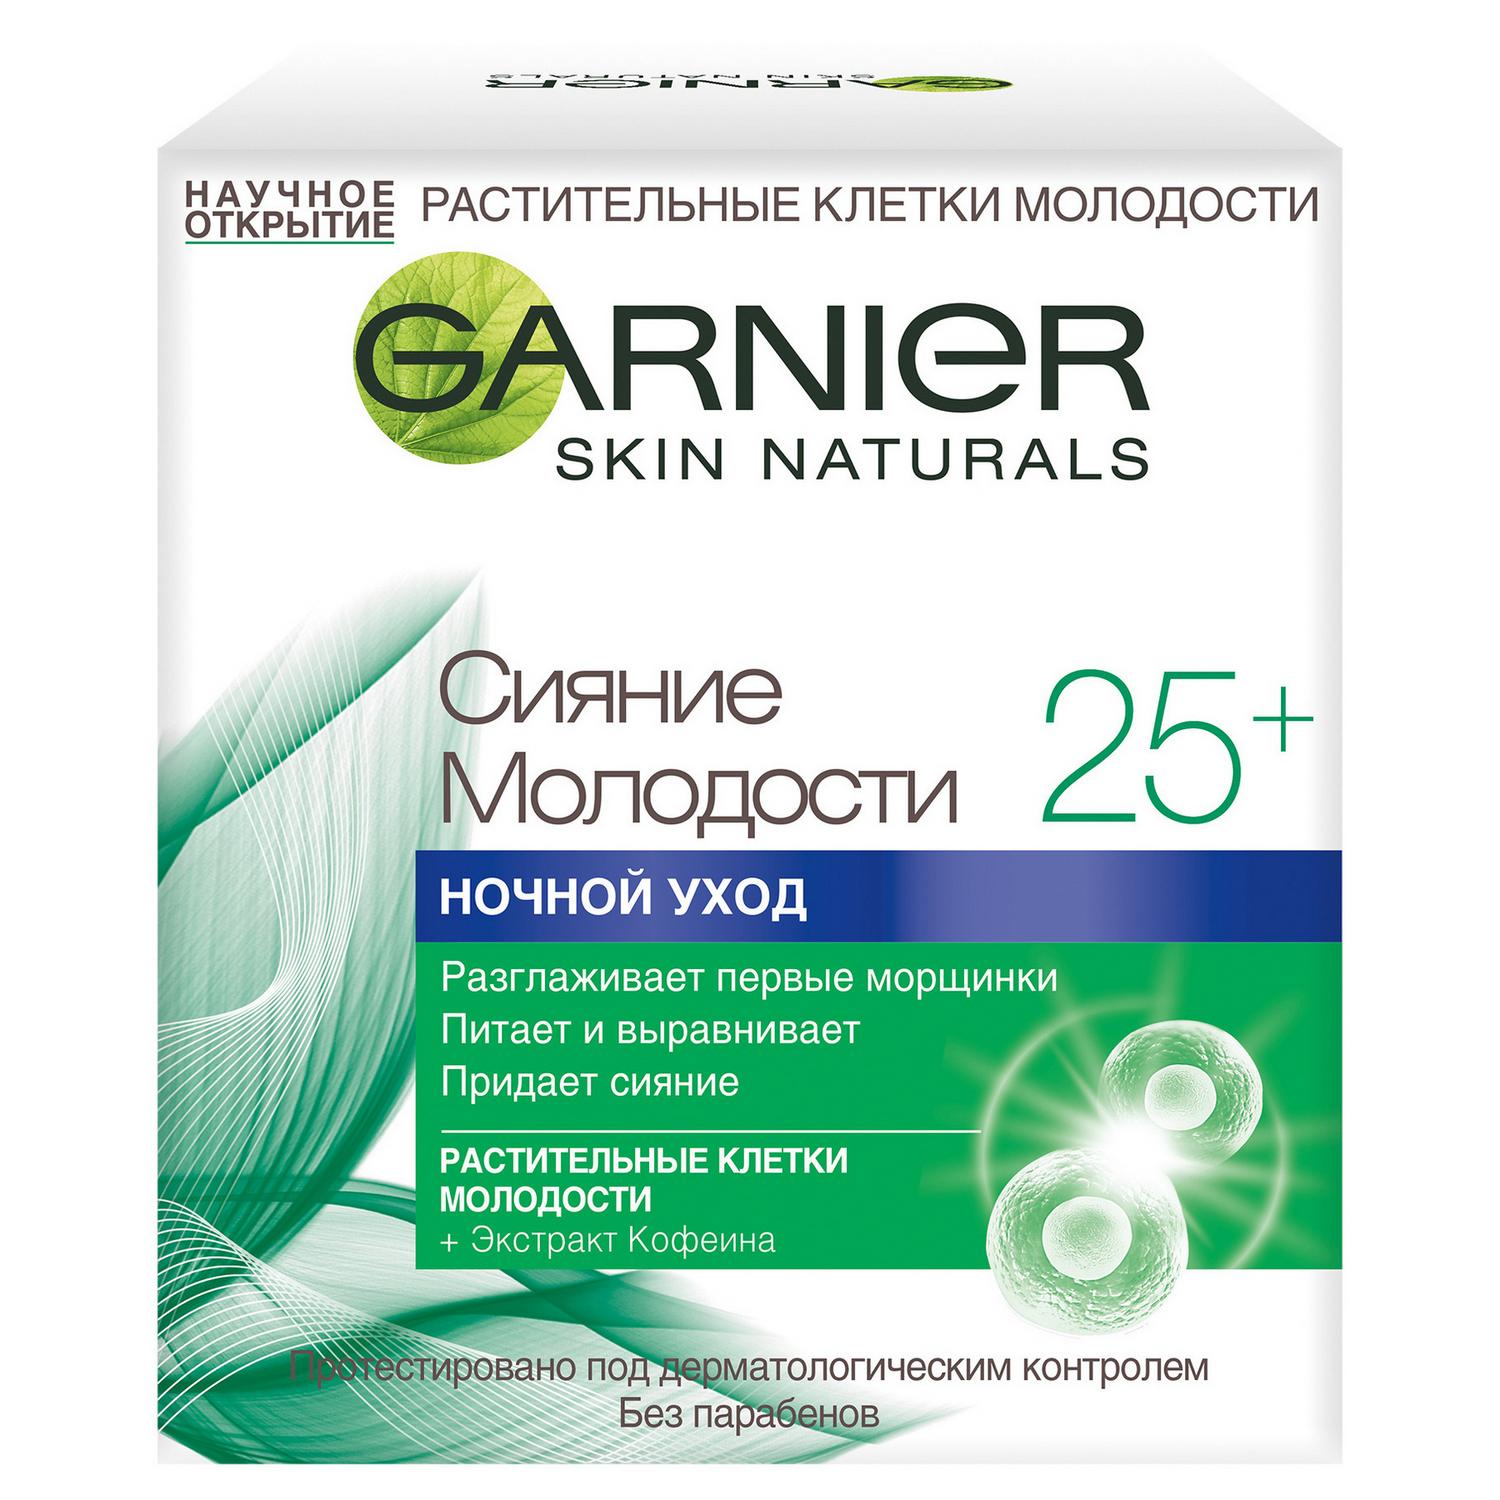 Крем для лица Garnier Skin Naturals Сияние Молодости 25+ ночной уход 50 мл, размер 8x6,6x6,6 см C4929600/6 - фото 1